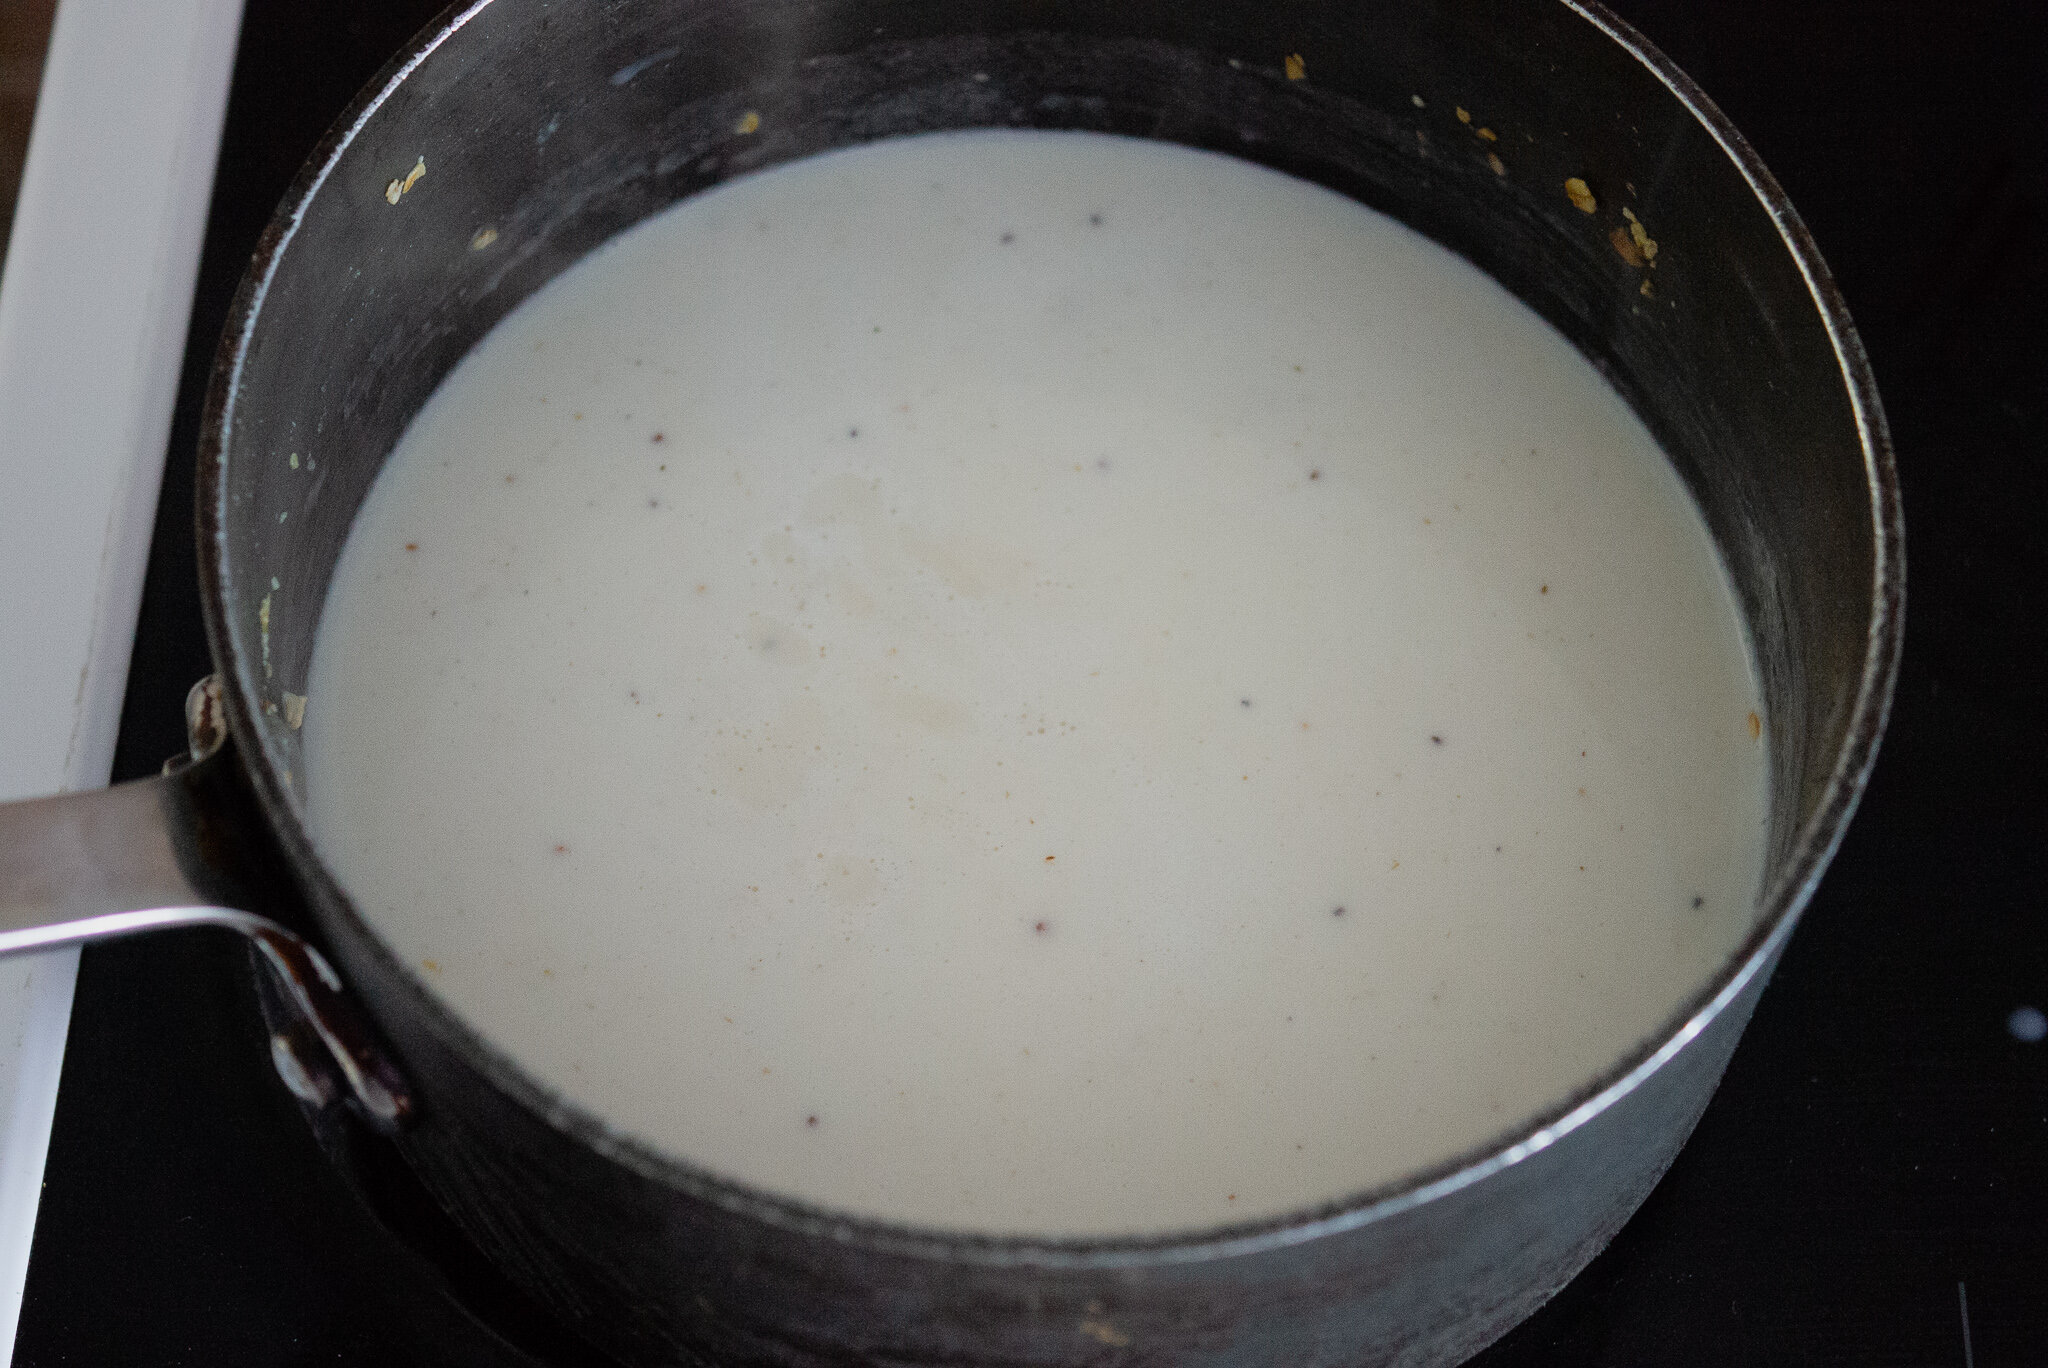 recipe for porridge by kam sokhi allergy chef